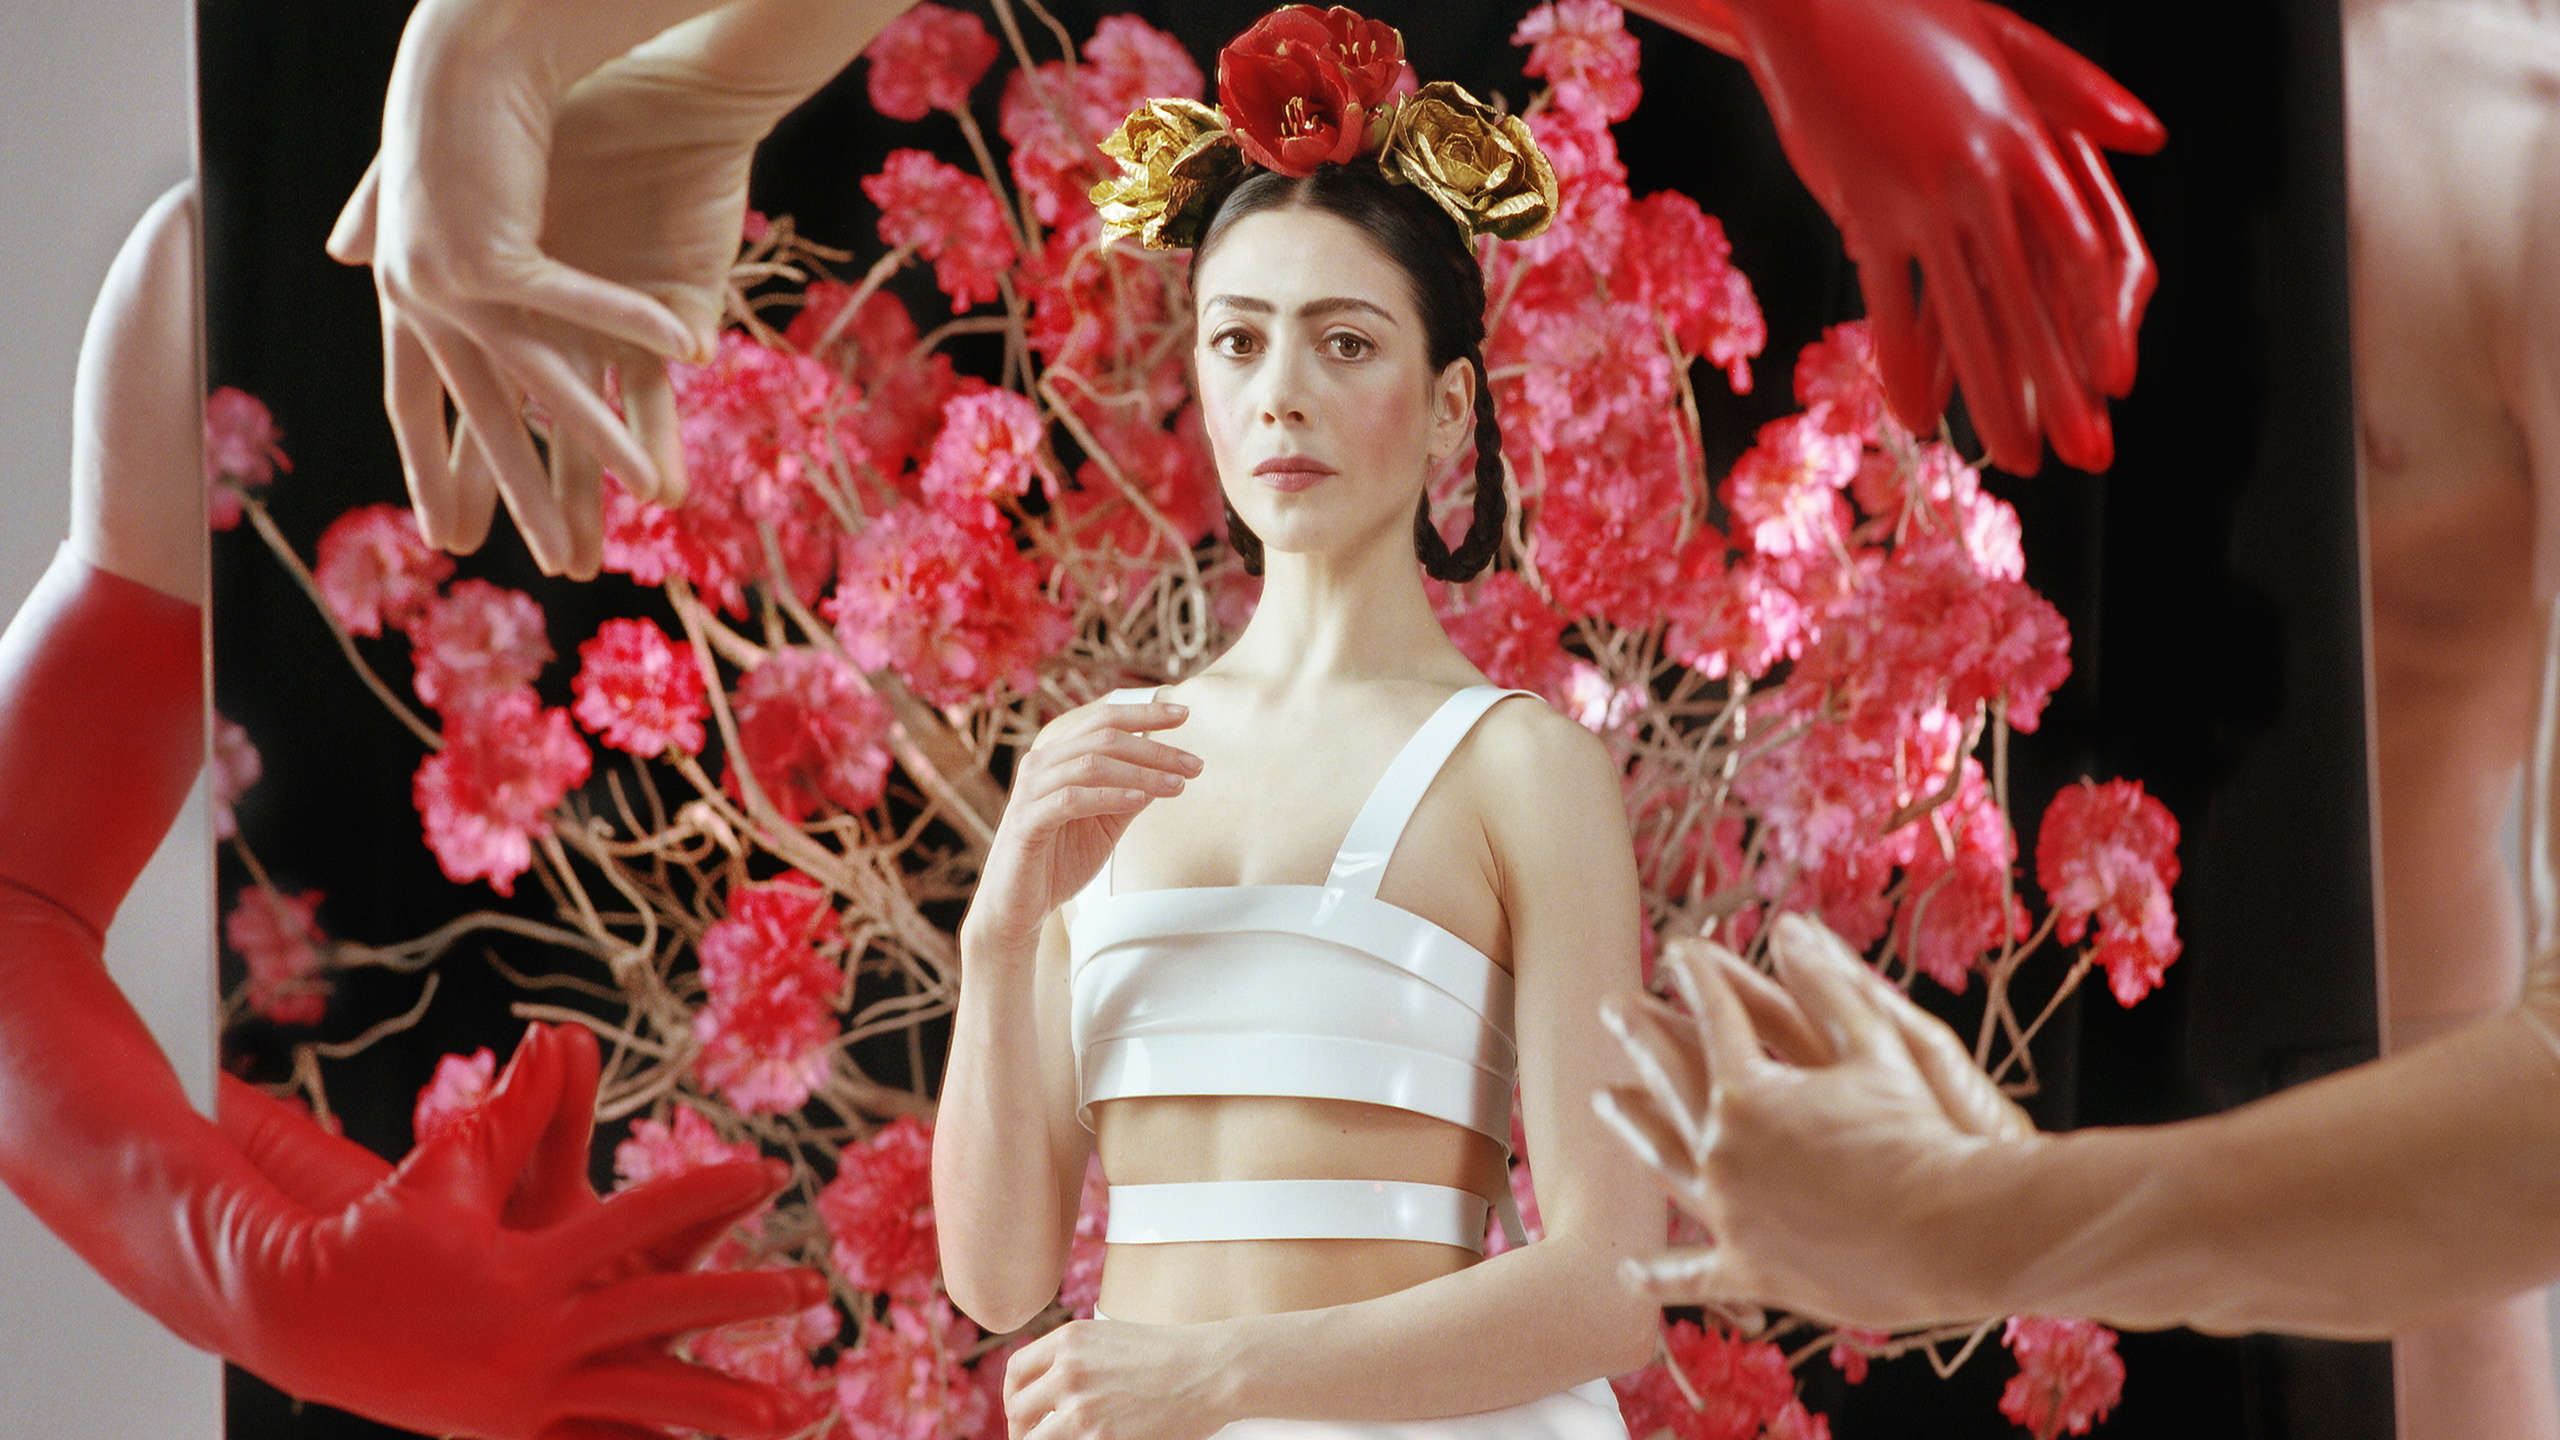 ZRODZONA ZE ŚMIERCI czyli „Frida” – Het Nationale Ballet w Amsterdamie